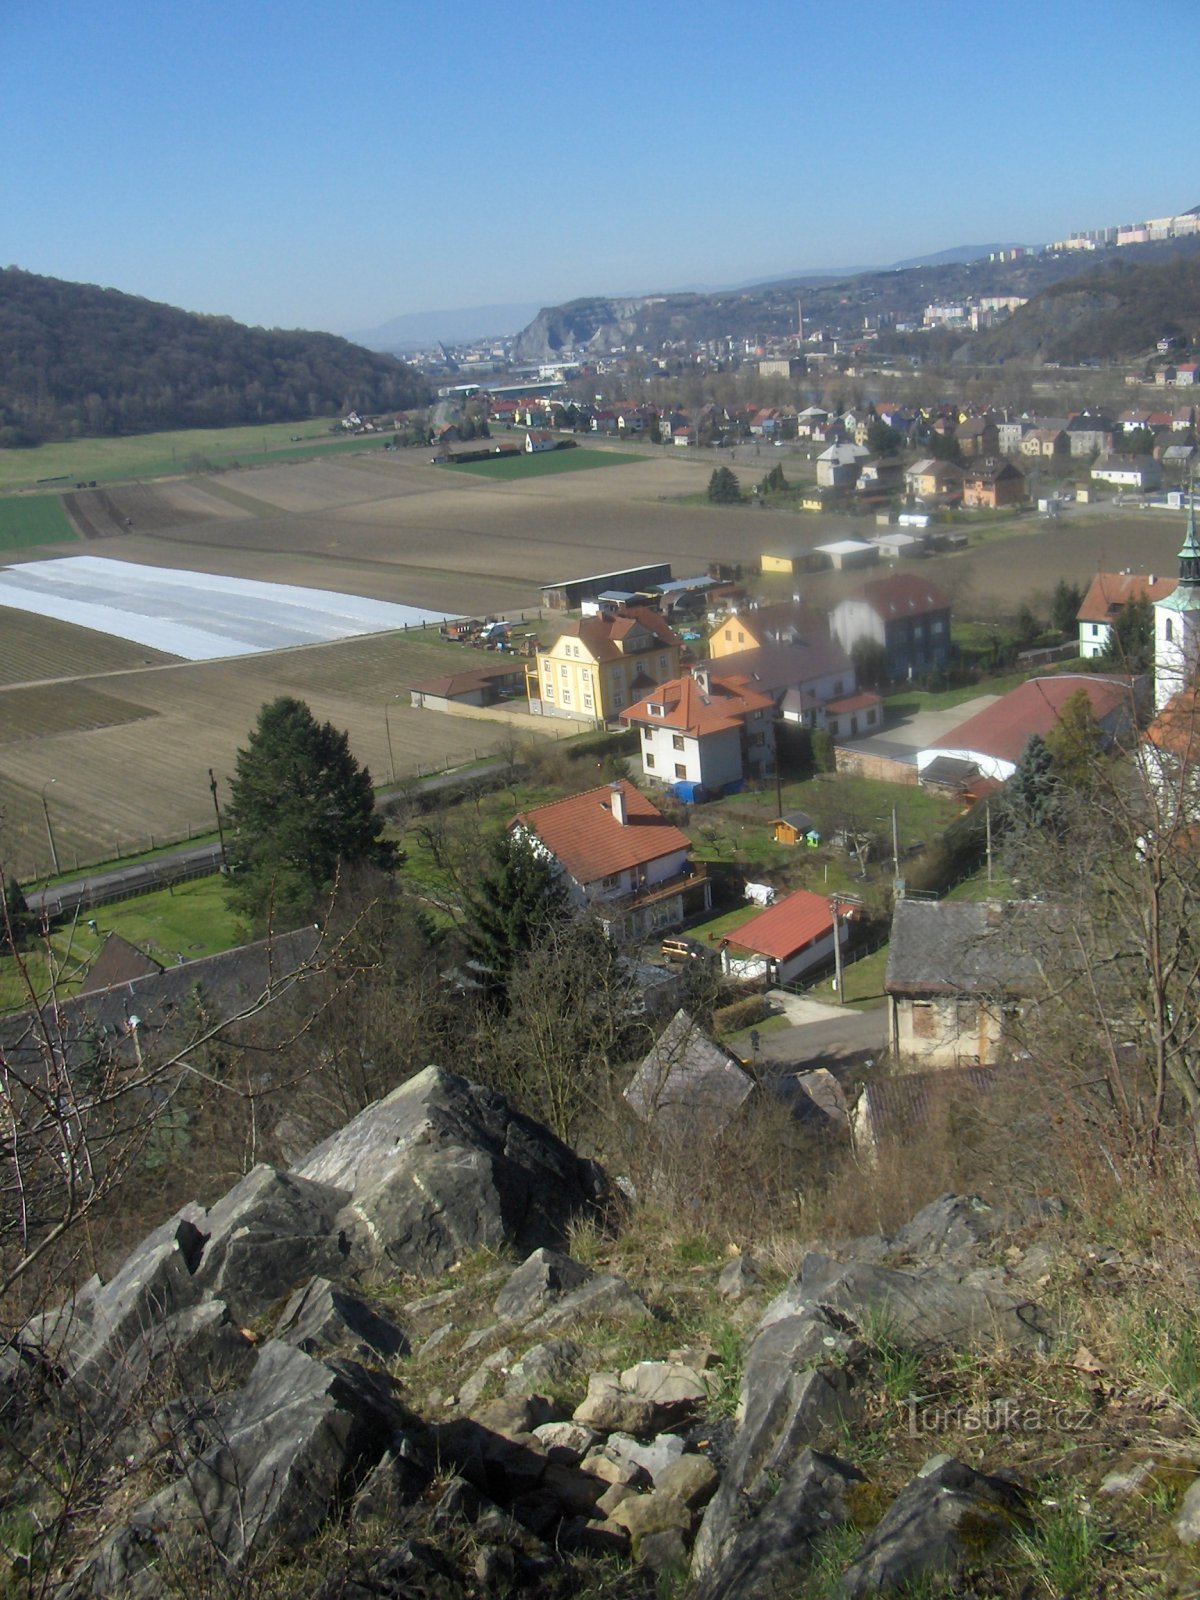 nhìn từ góc nhìn về phía Ústí nad Labem